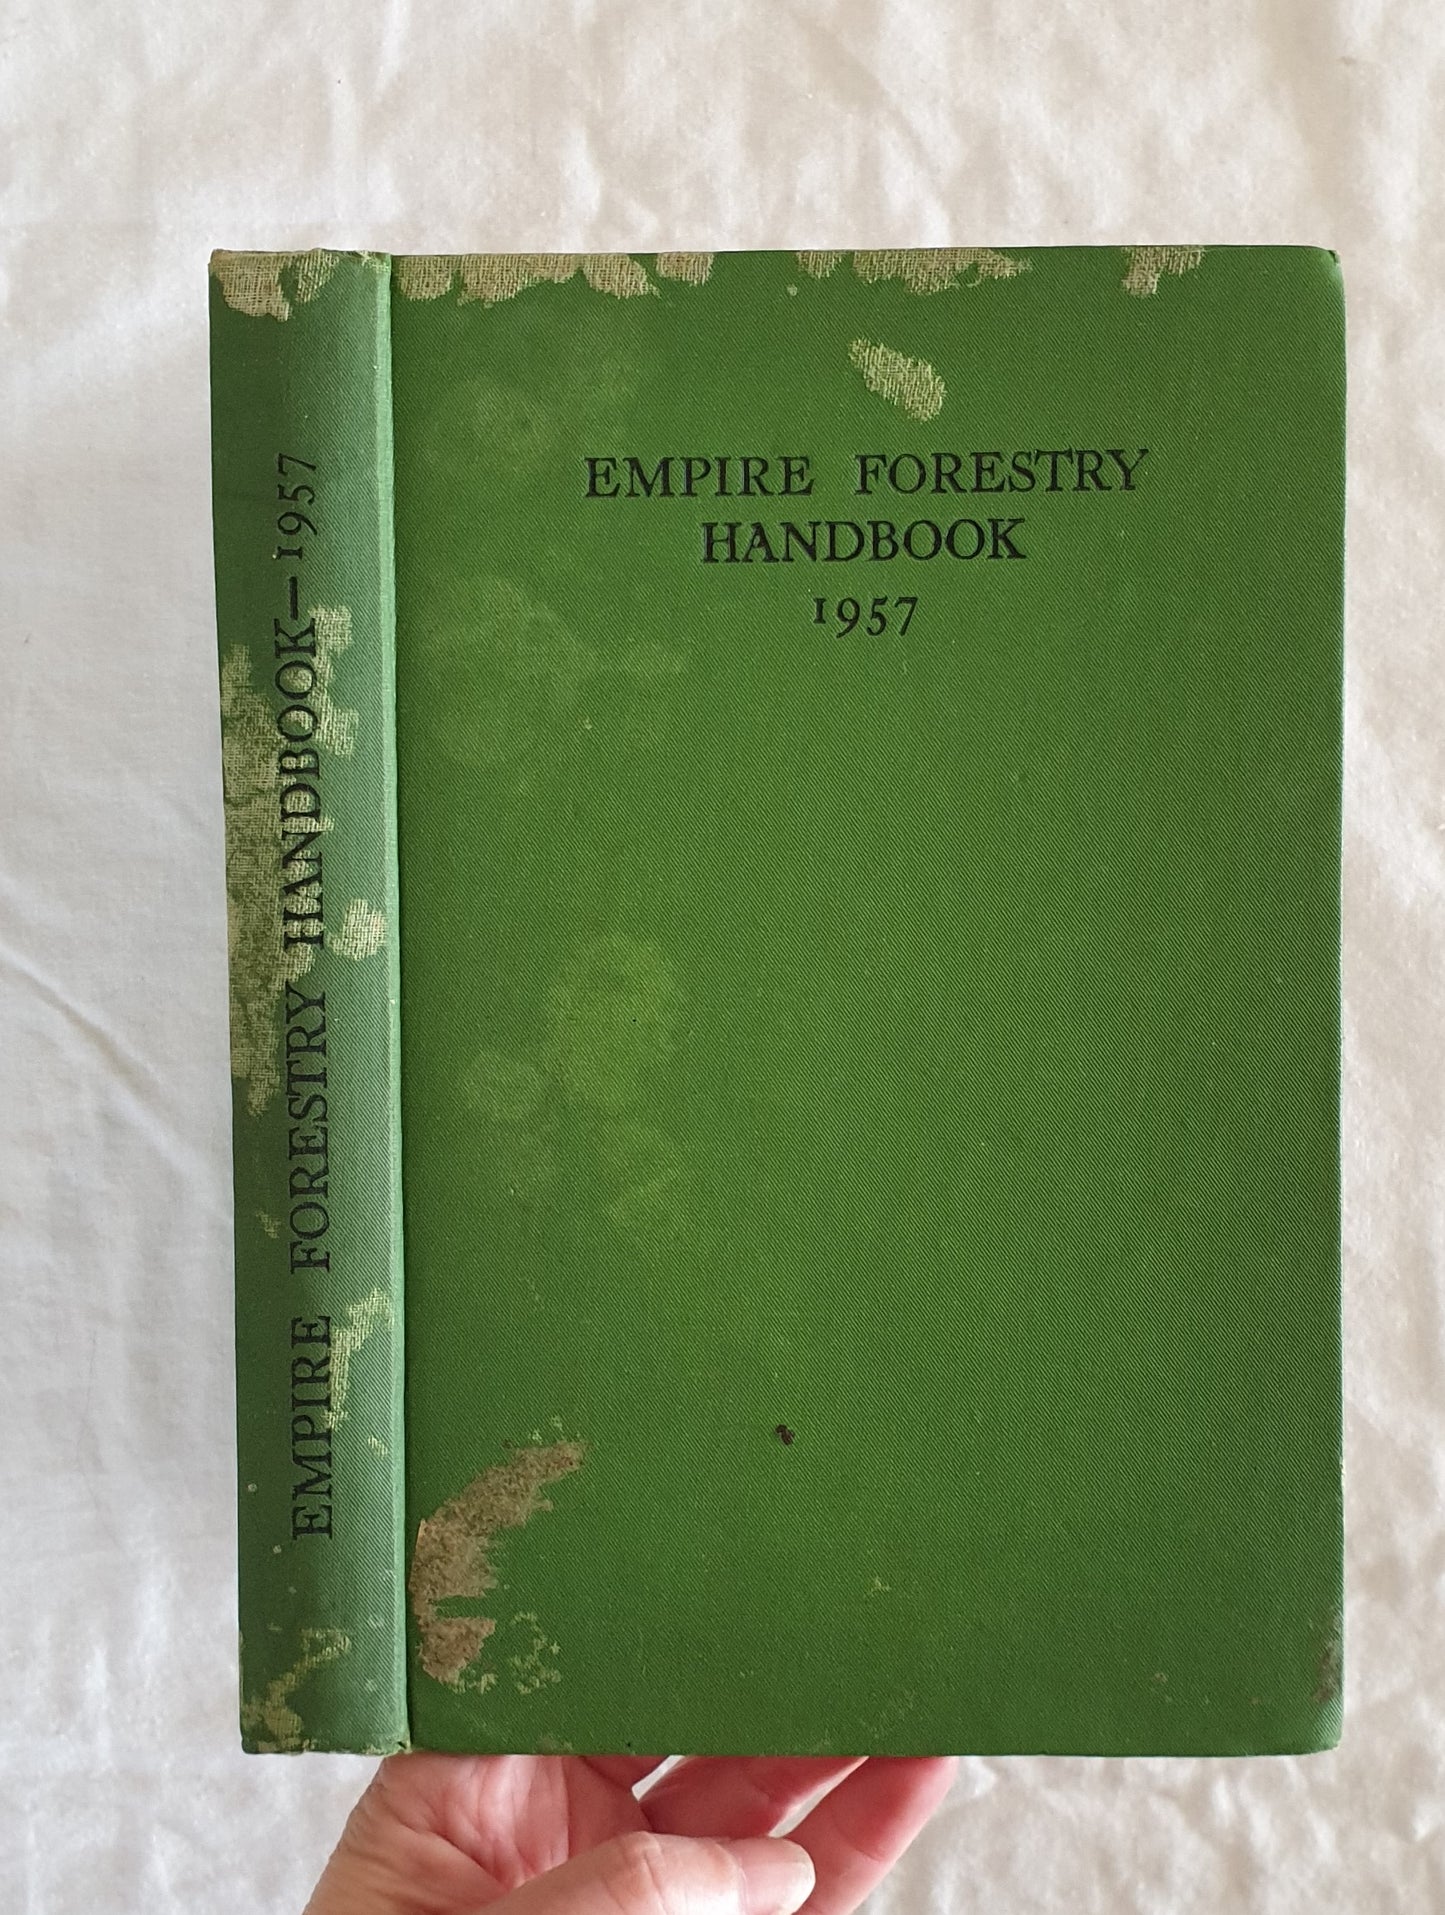 Empire Forestry Handbook 1957